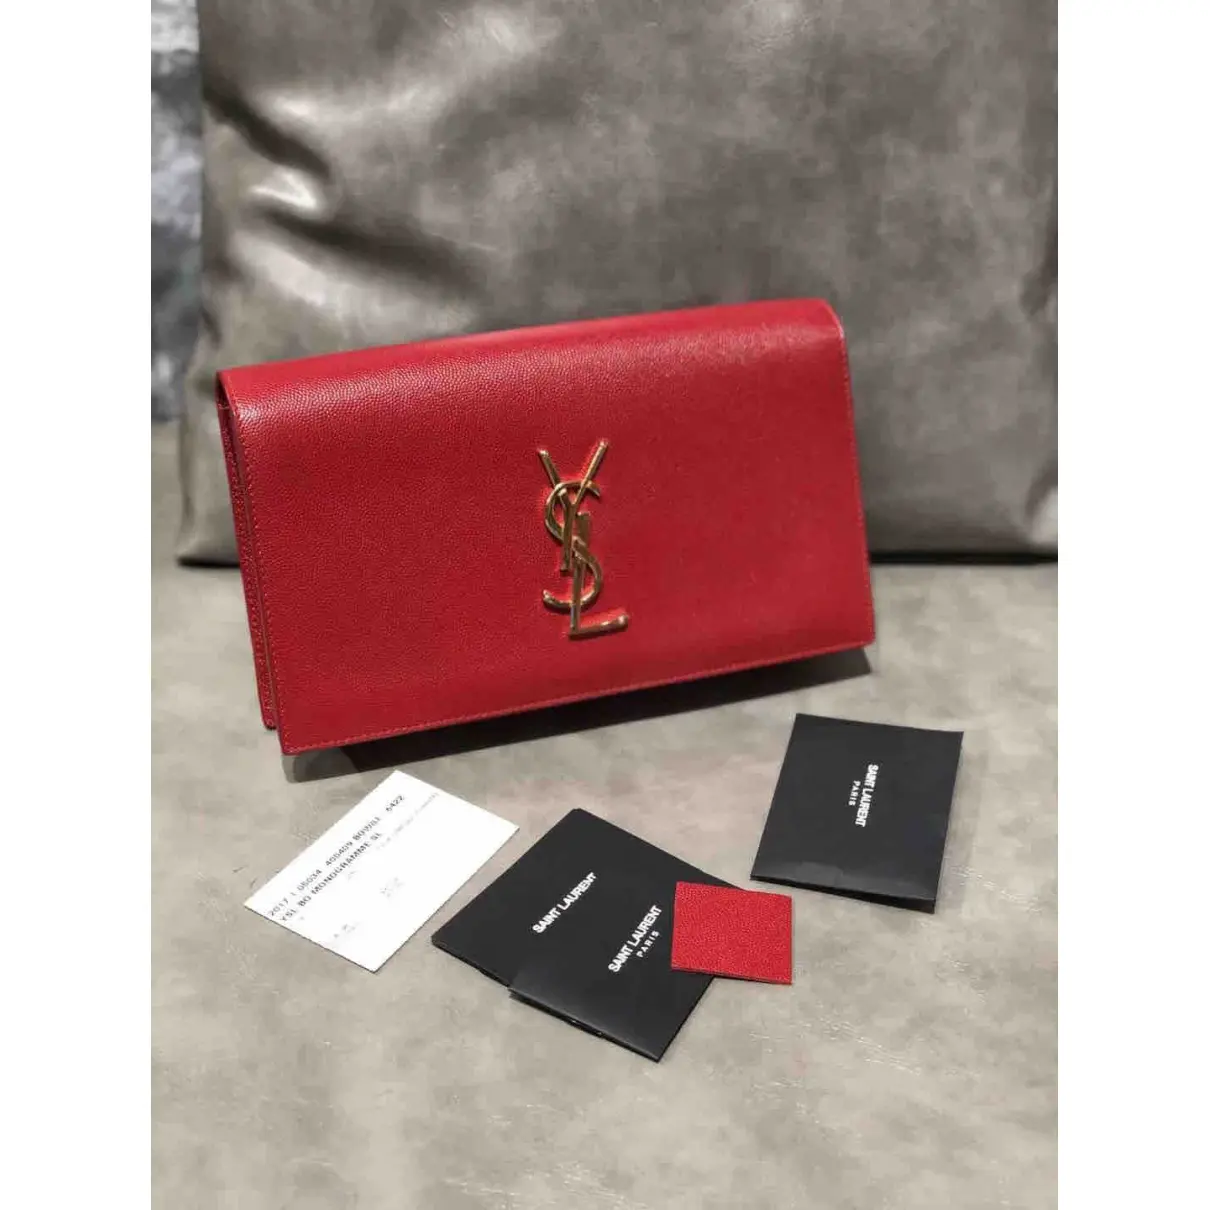 Kate monogramme leather handbag Saint Laurent